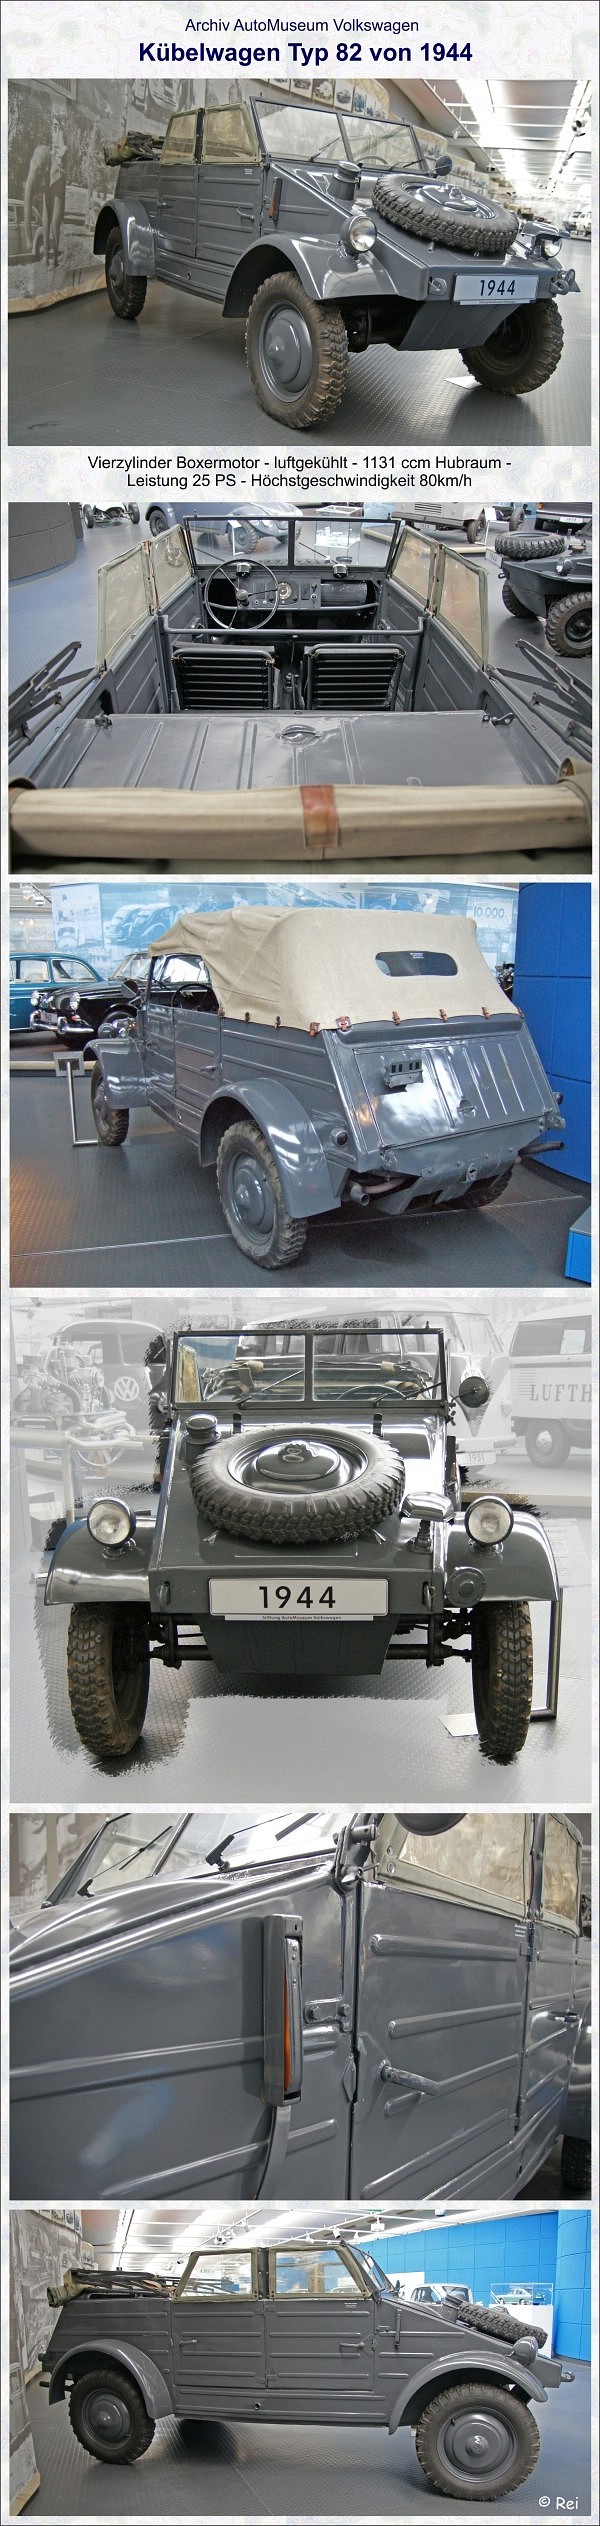 VW Kbelwagen von 1944